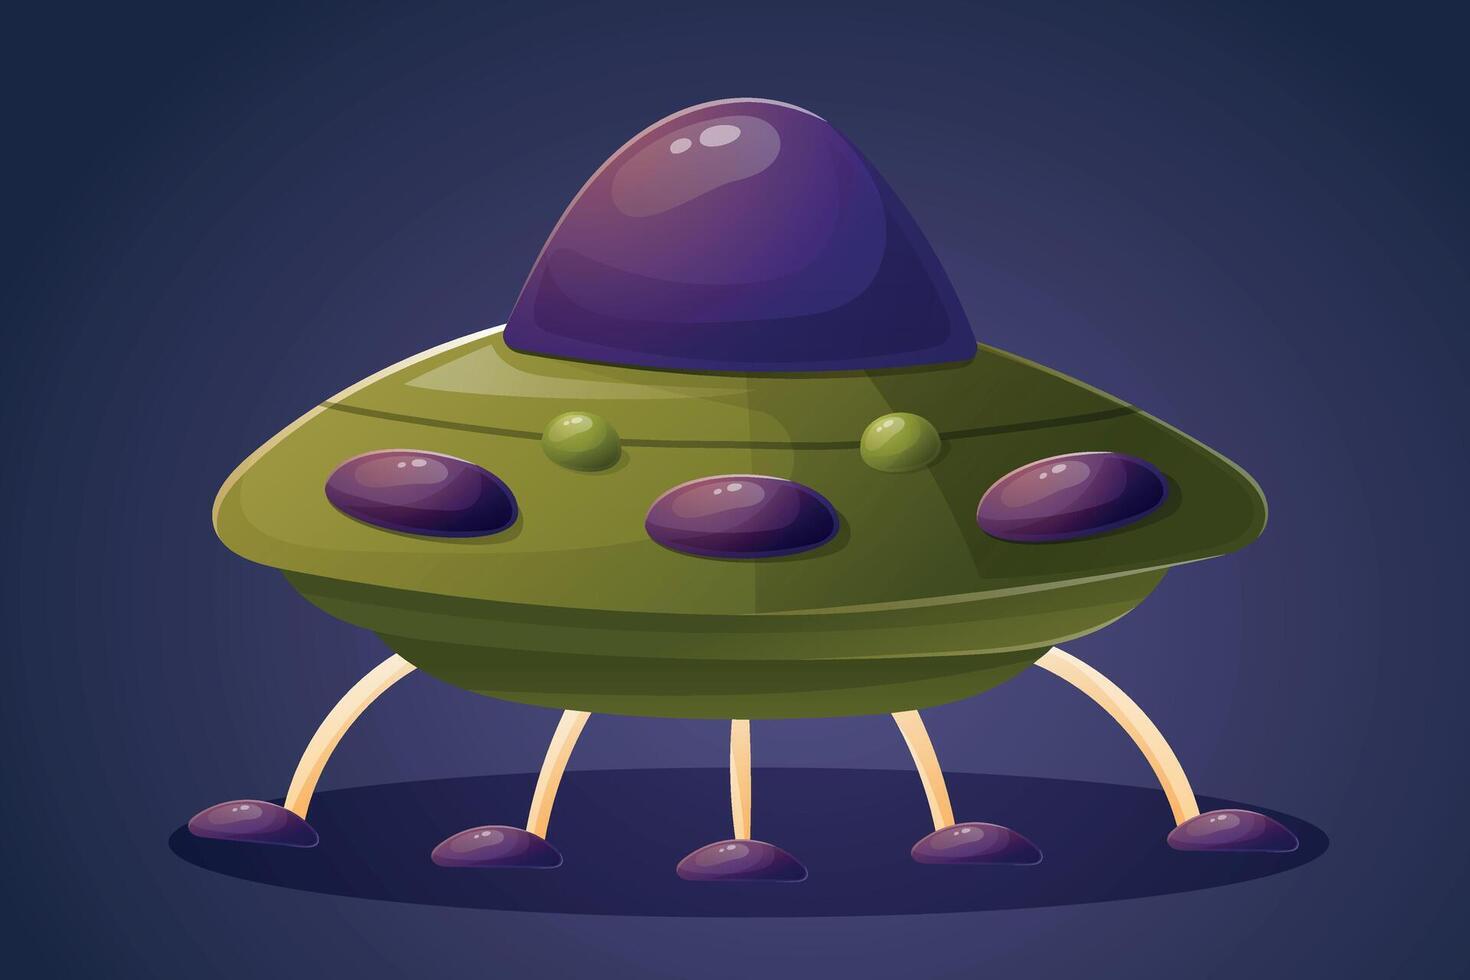 ein komisch Grün runden fliegend Untertasse Raumschiff mit Beine. Aliens von Raum, ufos. isoliert Karikatur Illustration. vektor